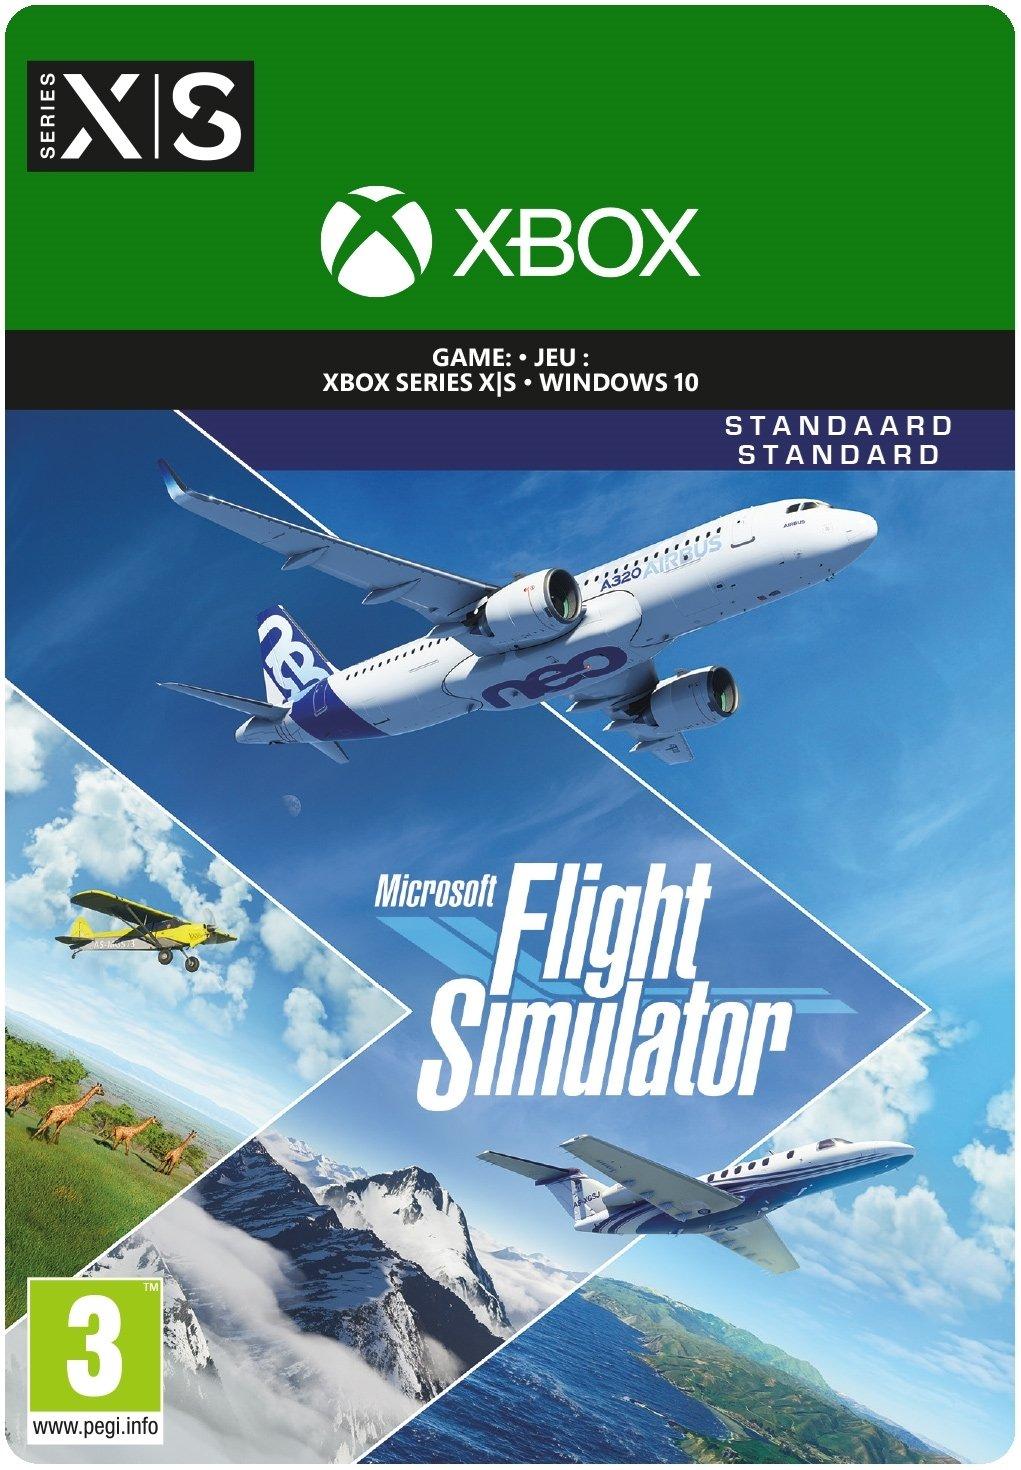 Microsoft Flight Simulator - Xbox Series X/Win10 - Game | 2WU-00030 (1dfa8f50-51f3-8e4b-8298-b9b74b3c6522)